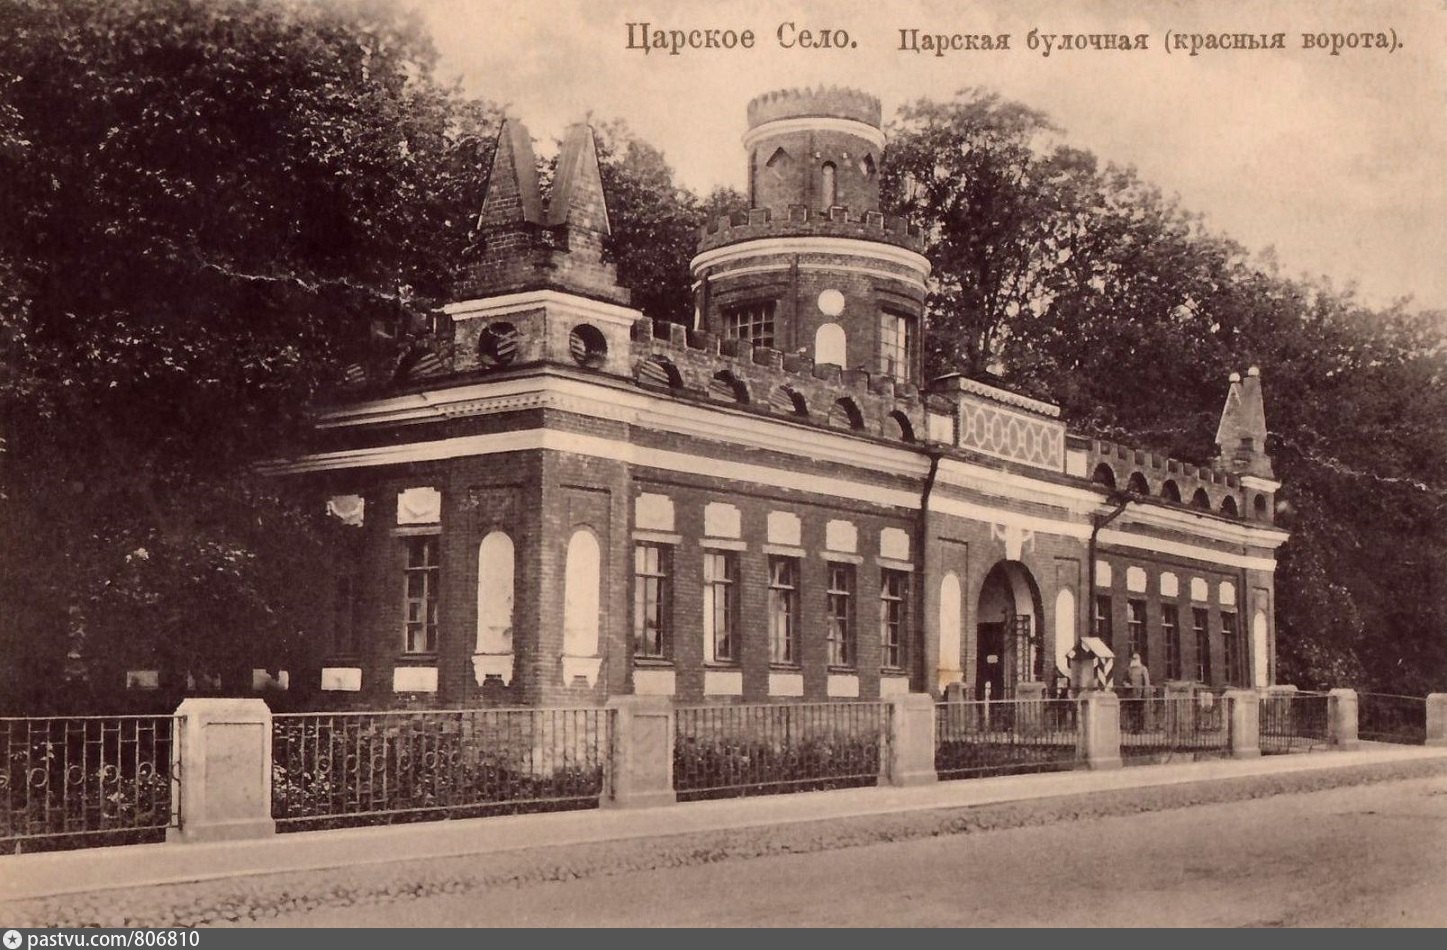 императорский вокзал в царском селе